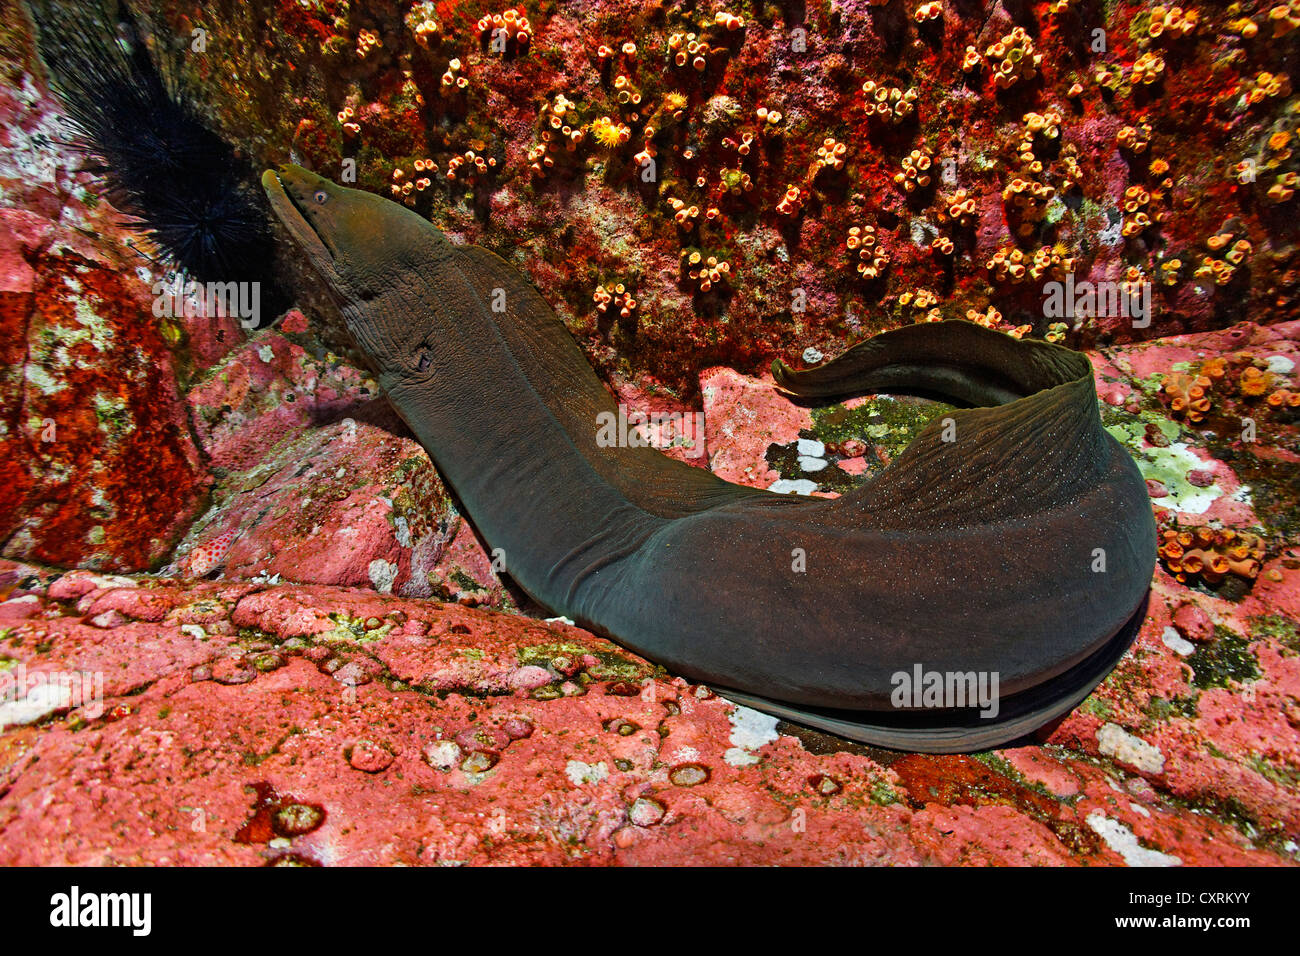 Murena punteggiato o chiazzato Fine moray eel (Gymnothorax dovii) su fondali rocciosi, Roca Partida, Revillagigedo Islands, Messico Foto Stock